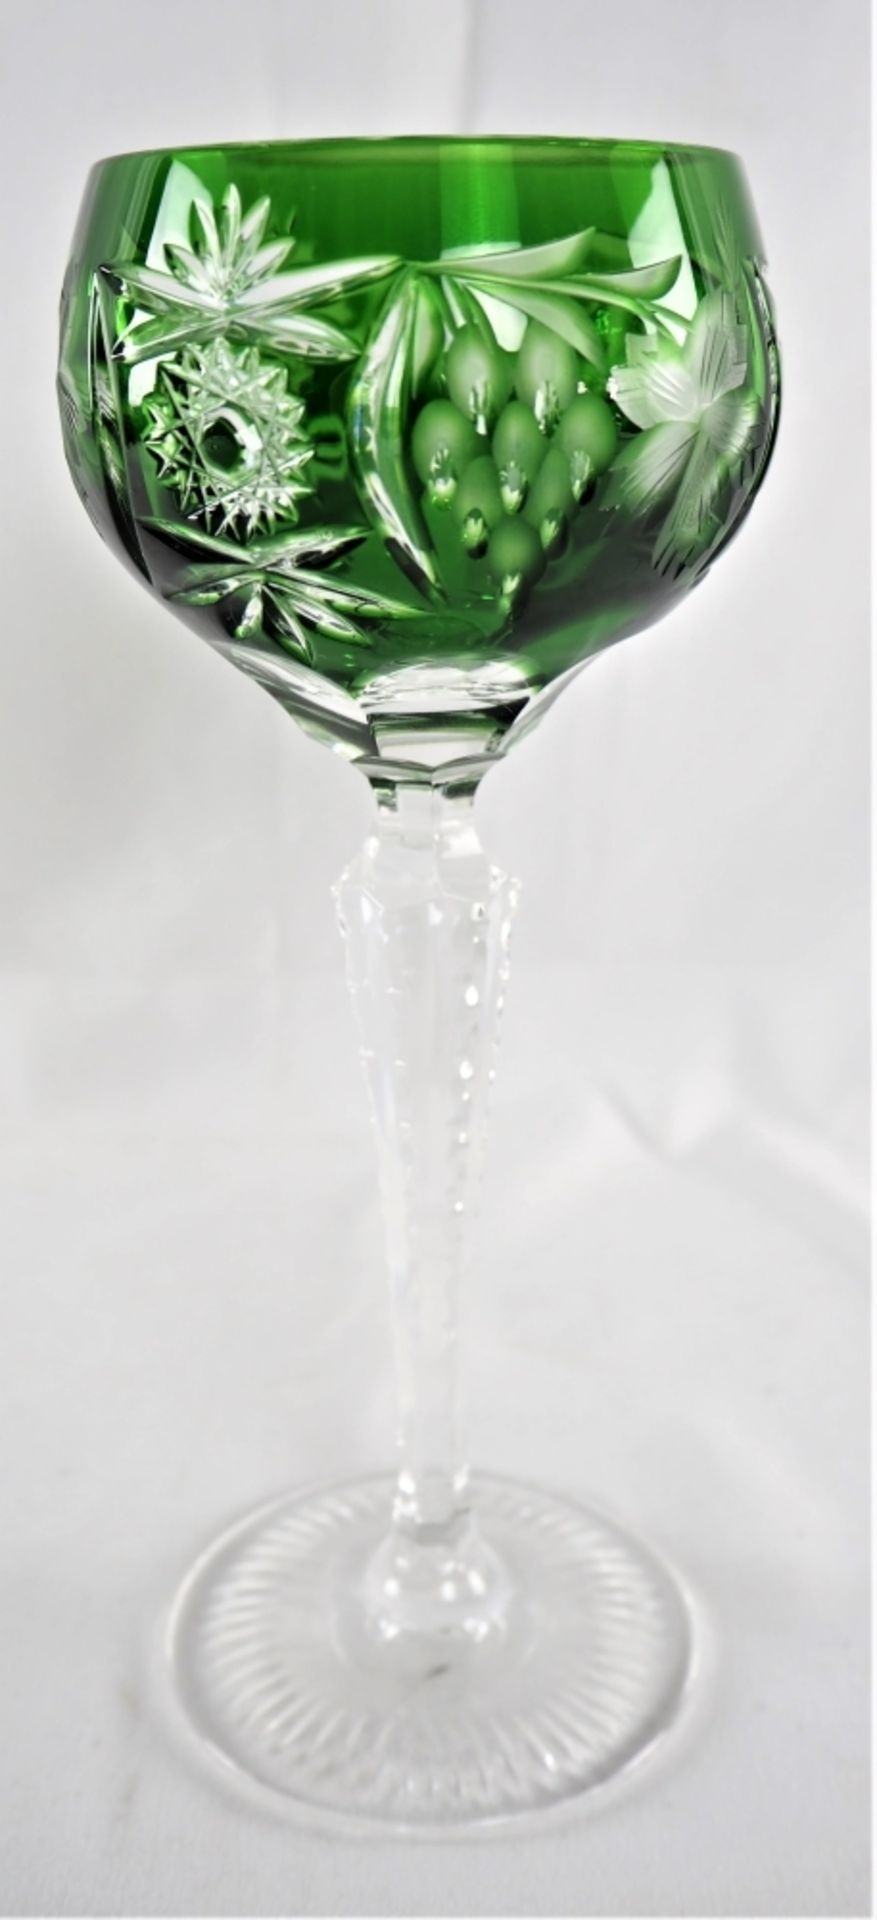 Weingläser, 13 Stück, Bleikristalldurchsichtig, mit grünem Überfang und reichlich floral - Bild 3 aus 4